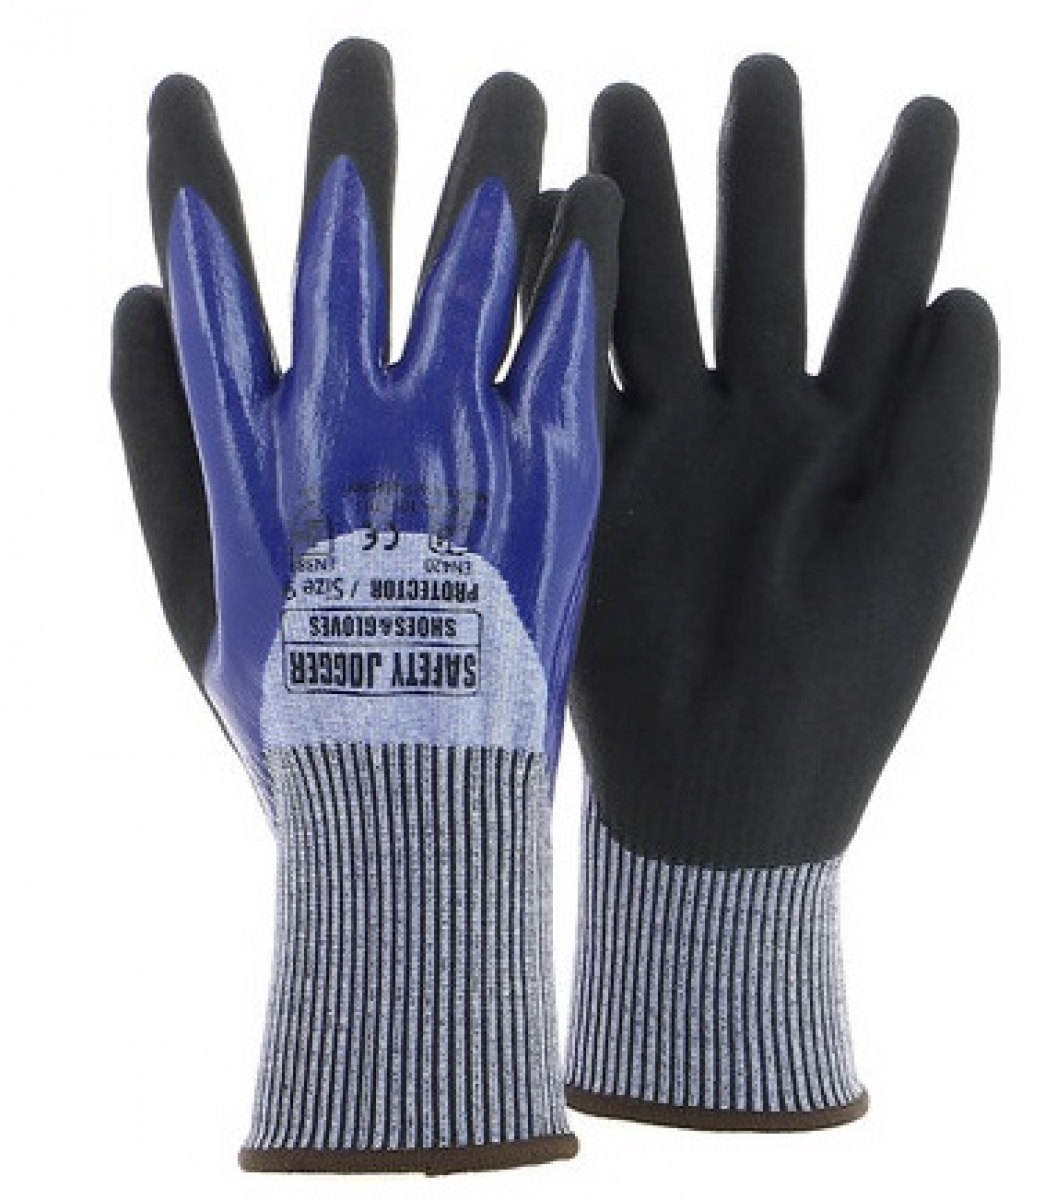 SAFETYJOGGER-Handschuh, PROTECTOR, schnittfest, aus HPPE, doppelte Nitrilbeschichtung, 4X44C